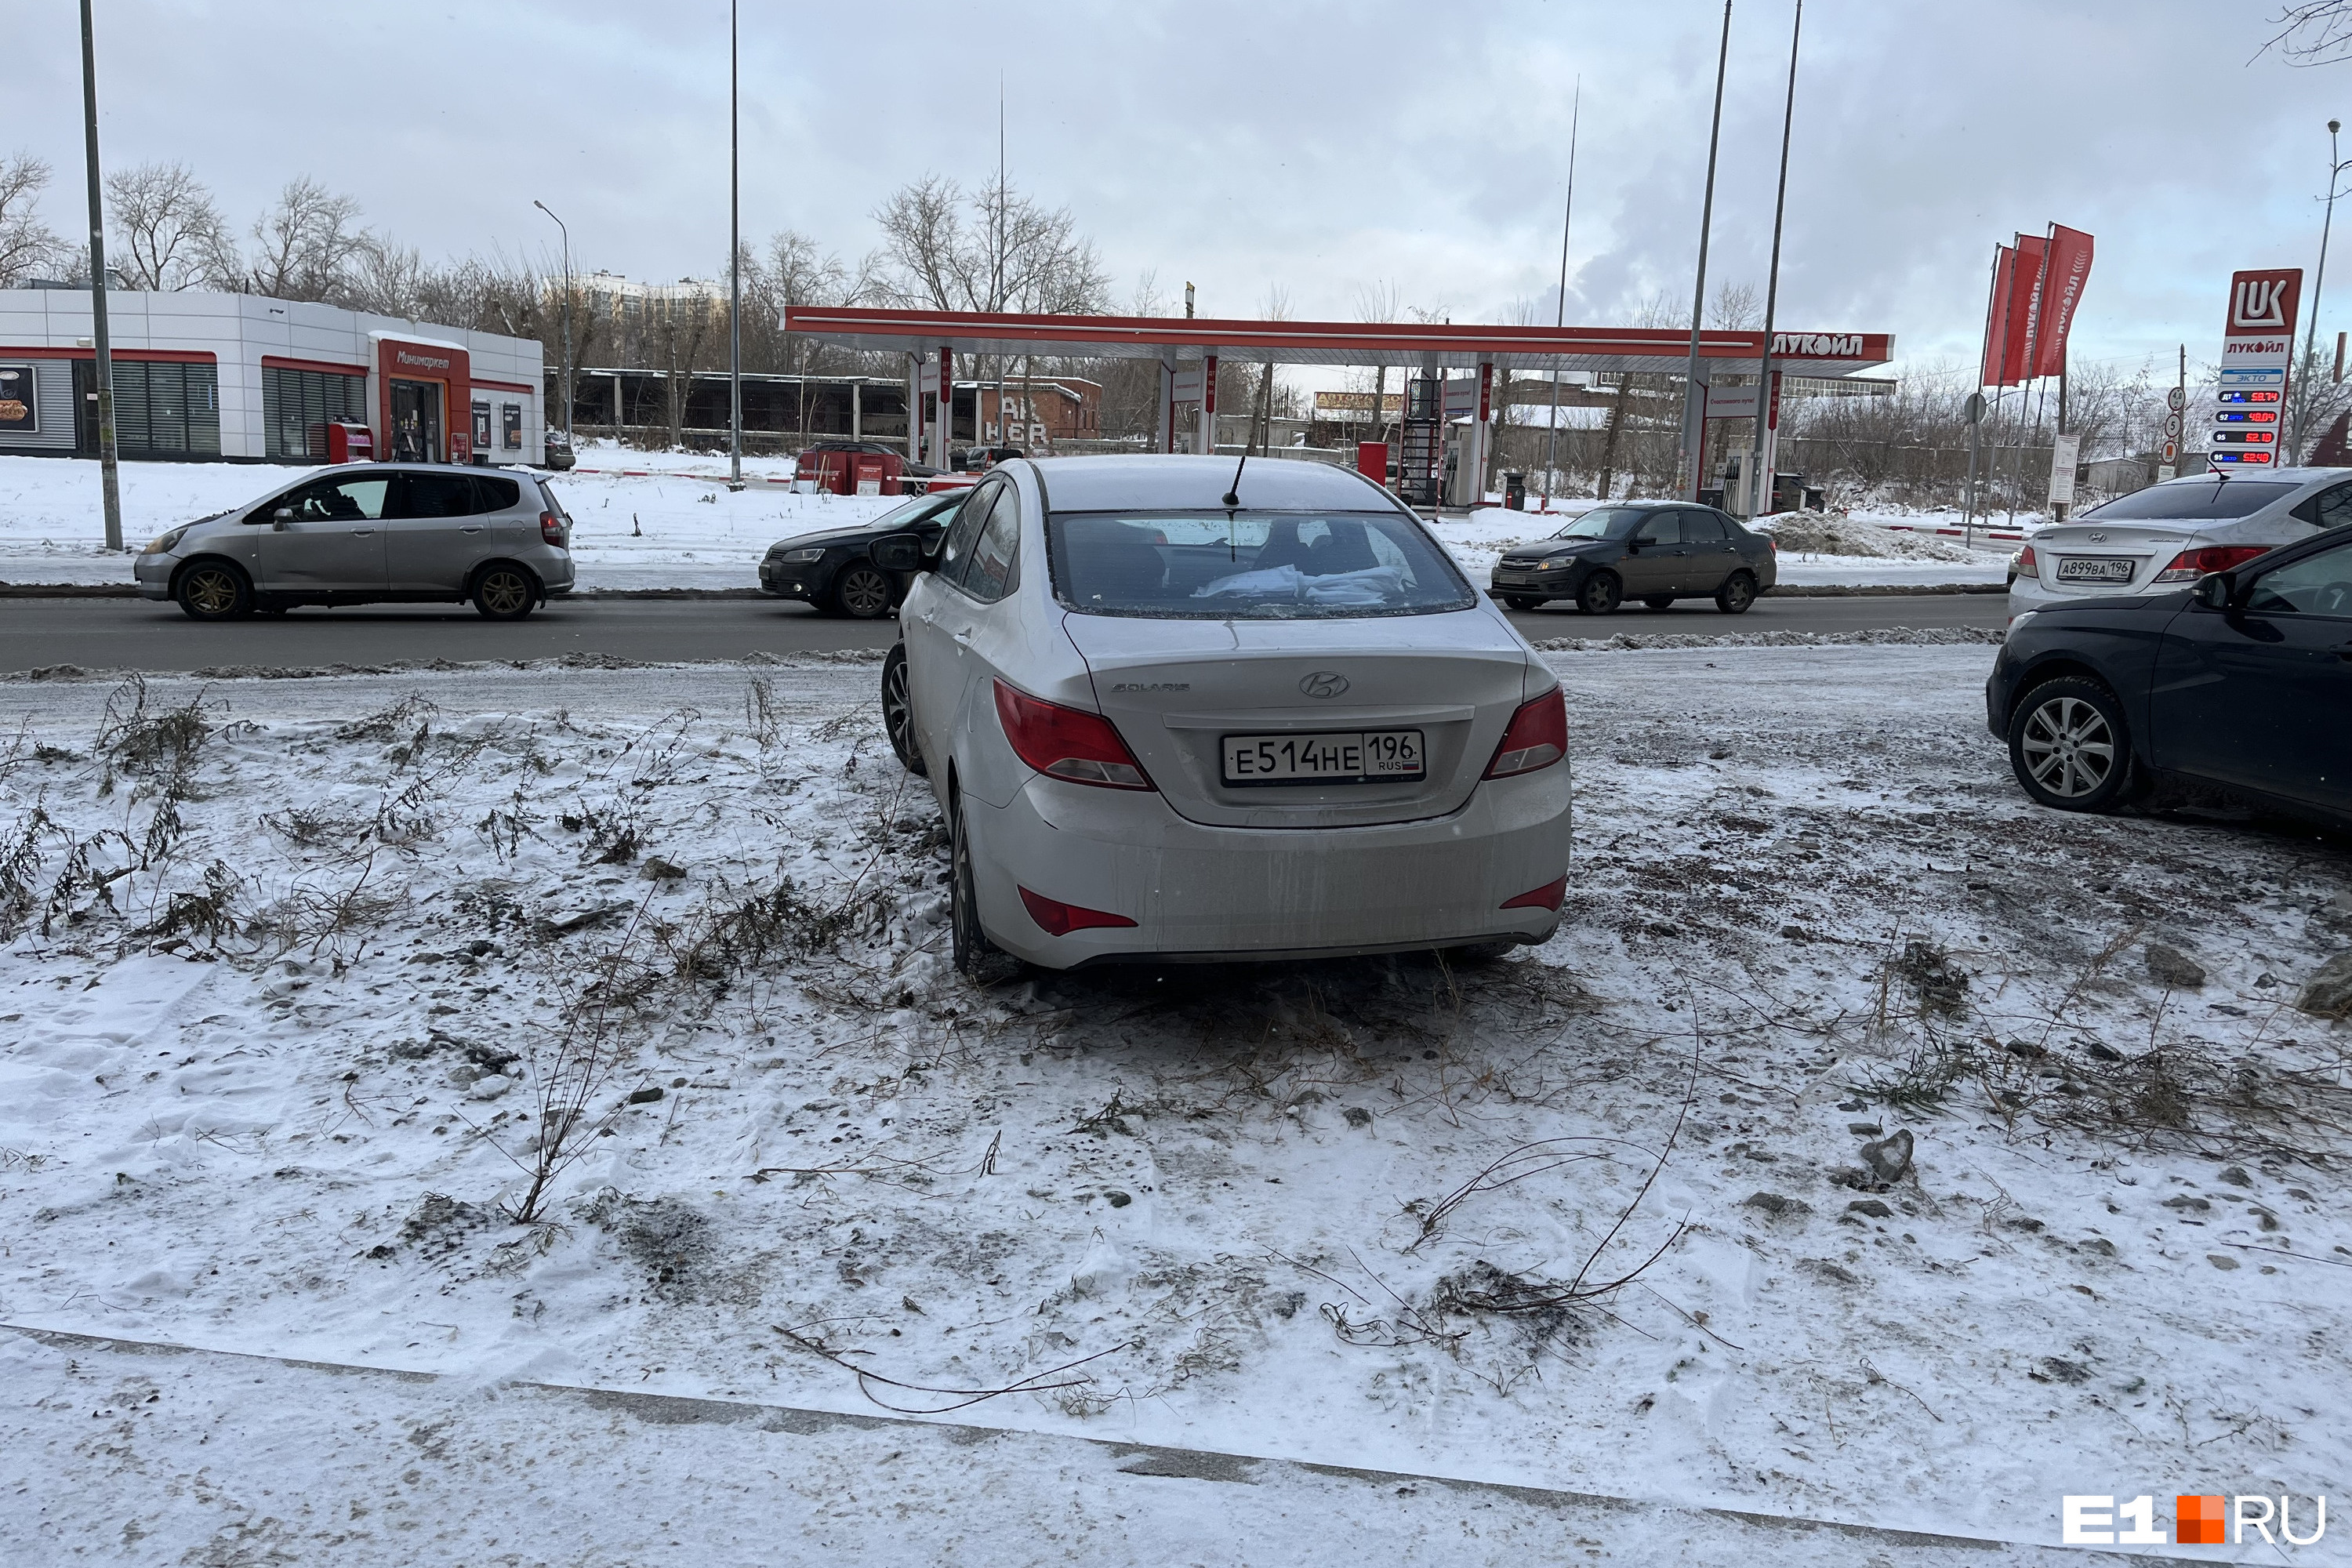 Шаг к победе над грязью: в Екатеринбурге автохамов на газонах начнут ловить «Парконами»